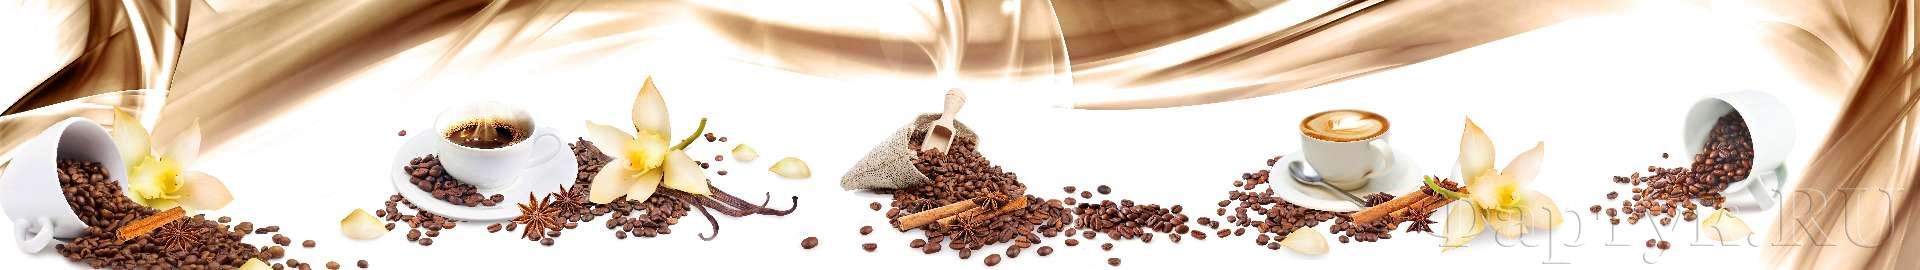 Кофе в чашках и кофейные зерна 